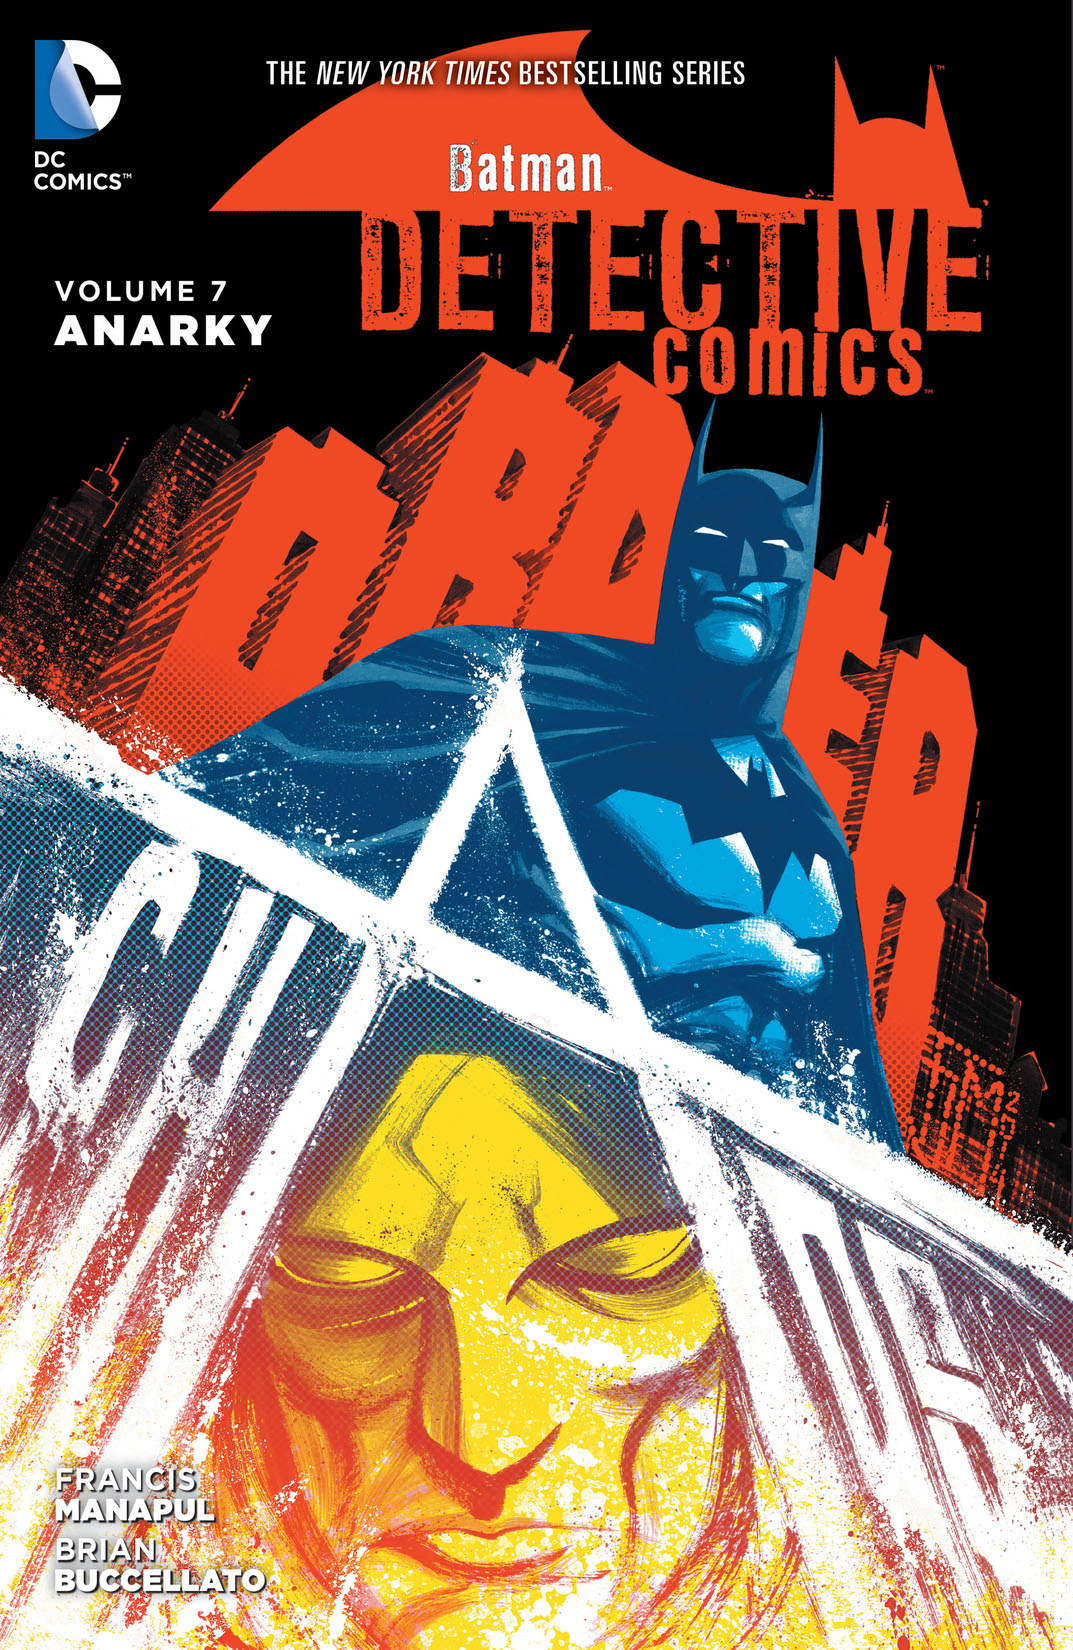 Batman - Detective Comics Vol. 7: Anarky preview images